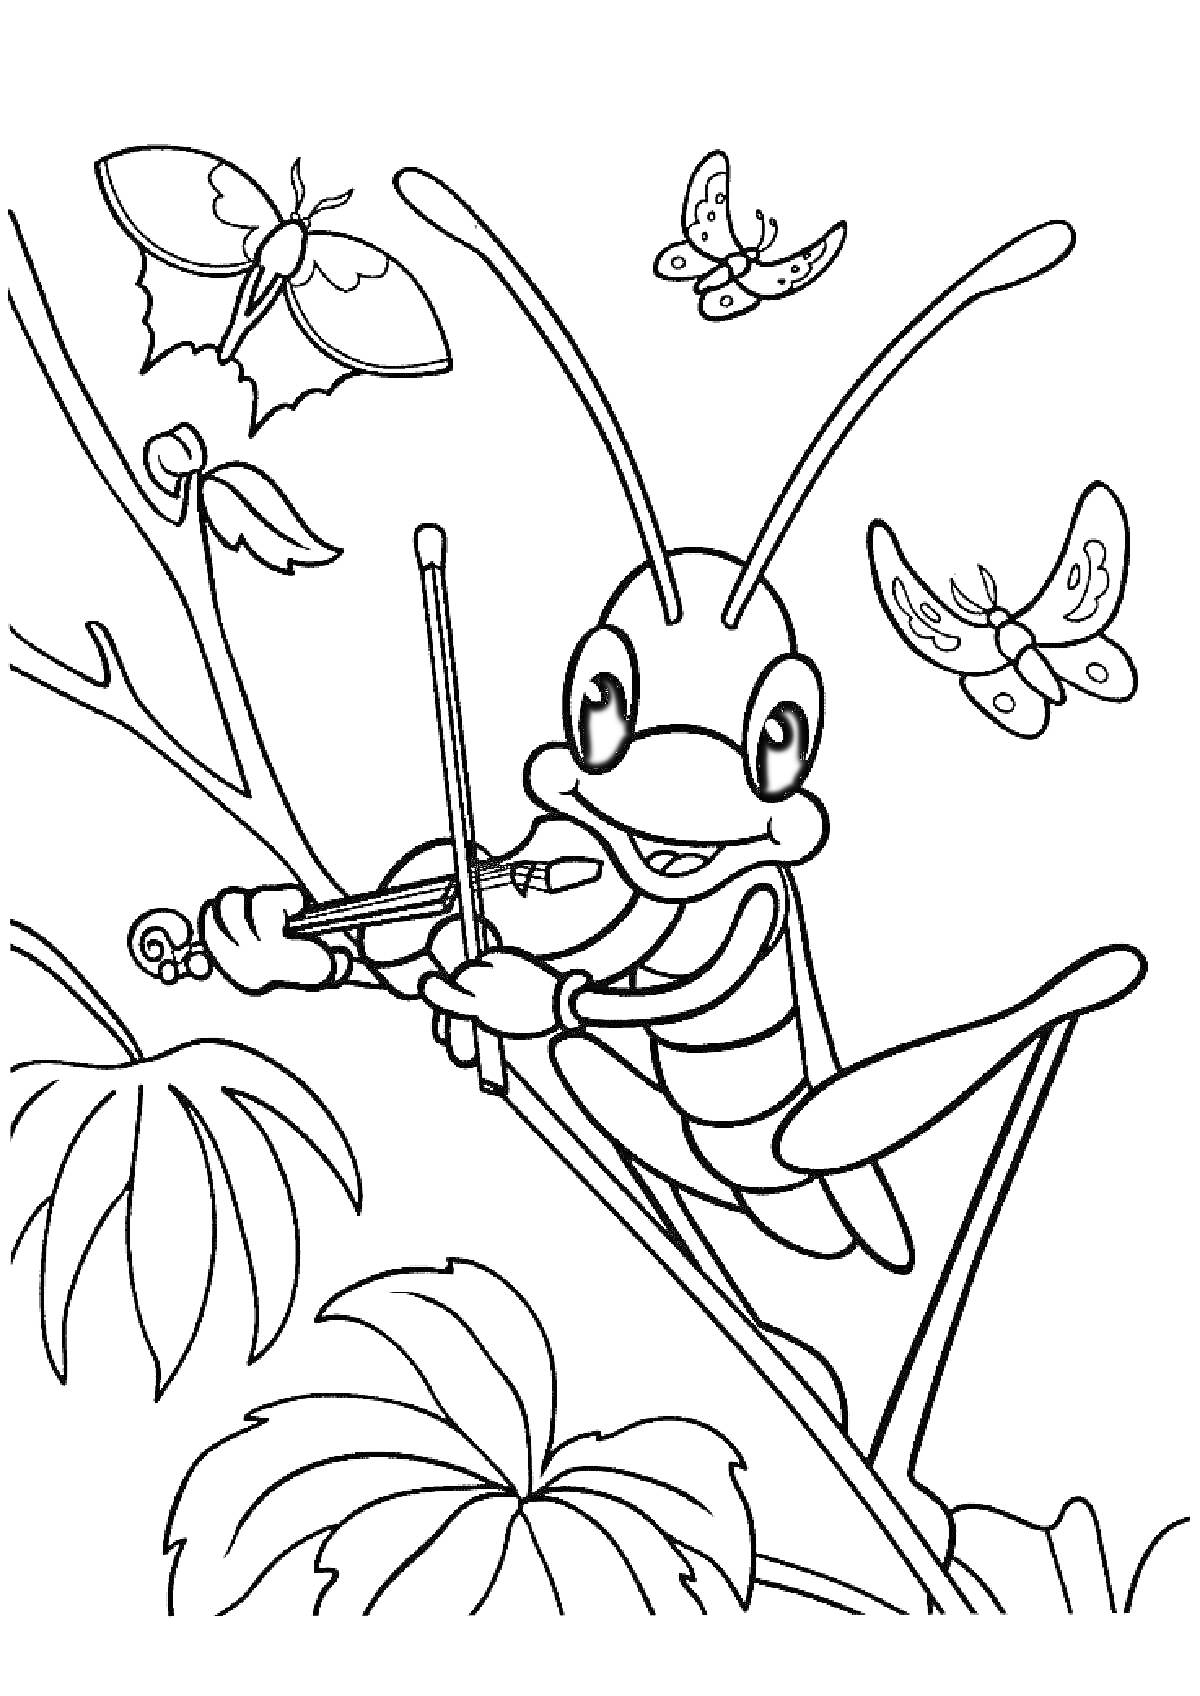 Кузнечик играет на скрипке на фоне бабочек и листьев растений